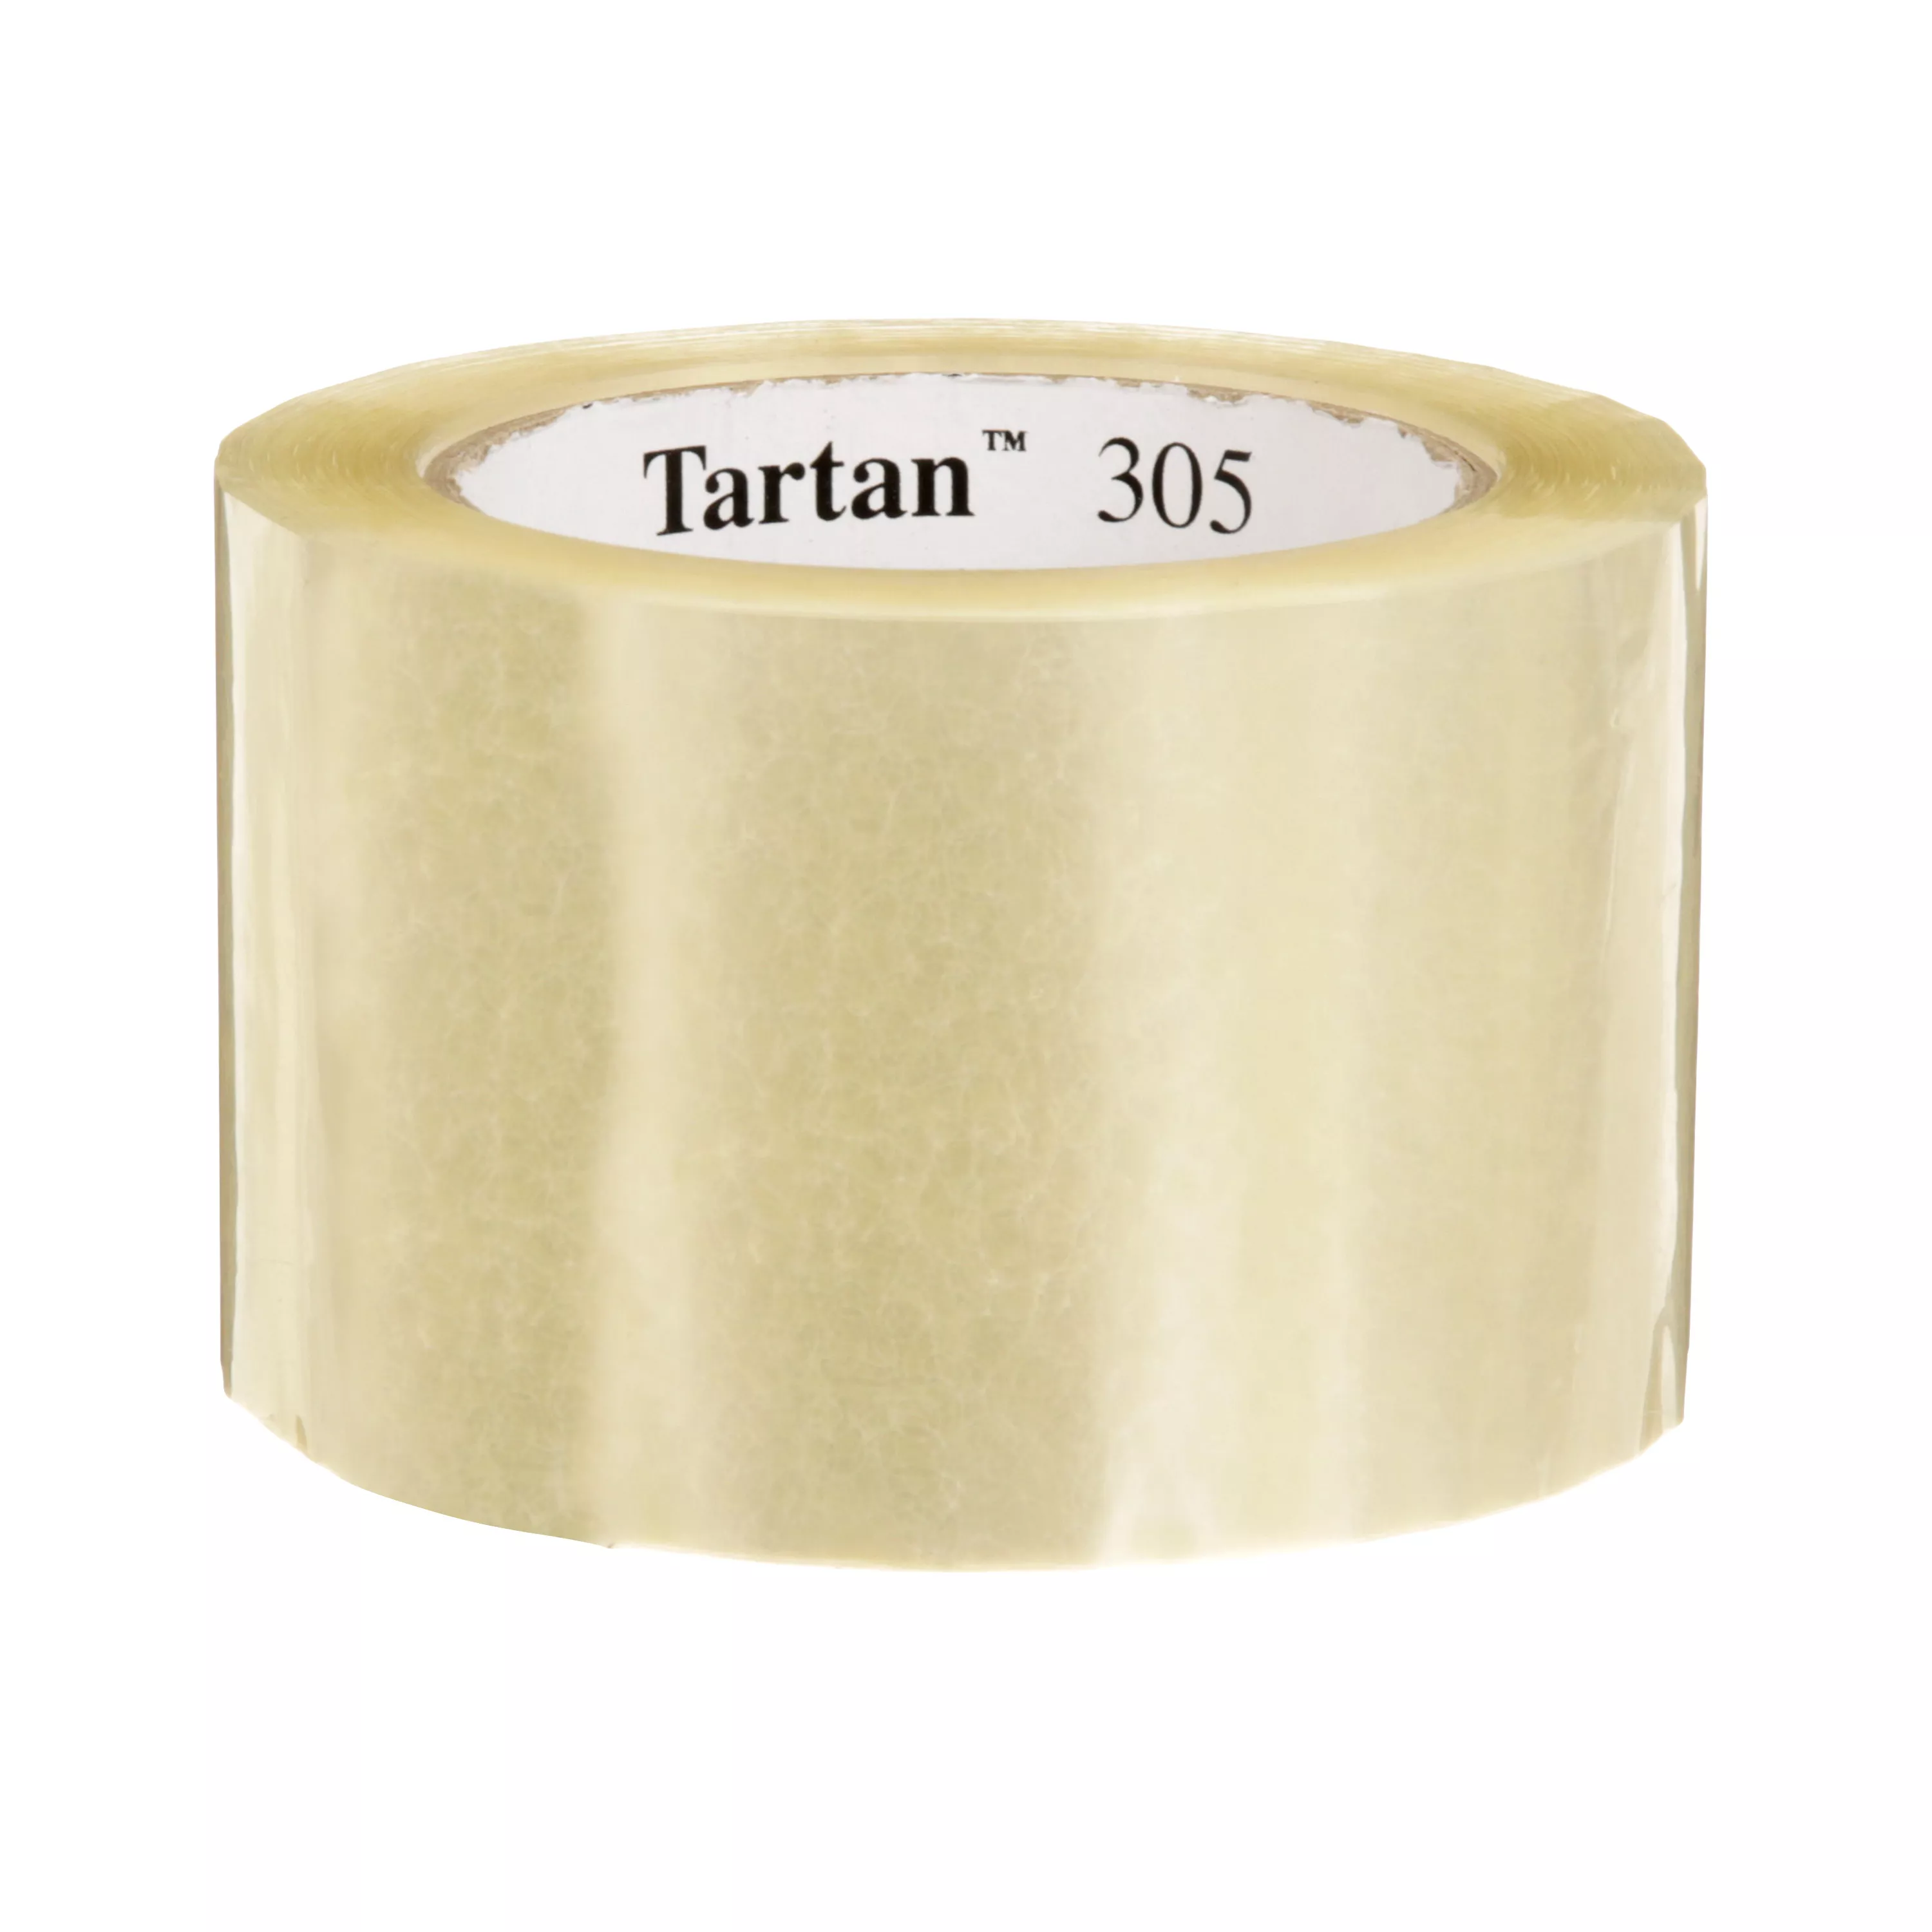 Tartan™ Box Sealing Tape 305, Clear, 72 mm x 100 m, 24 Rolls/Case